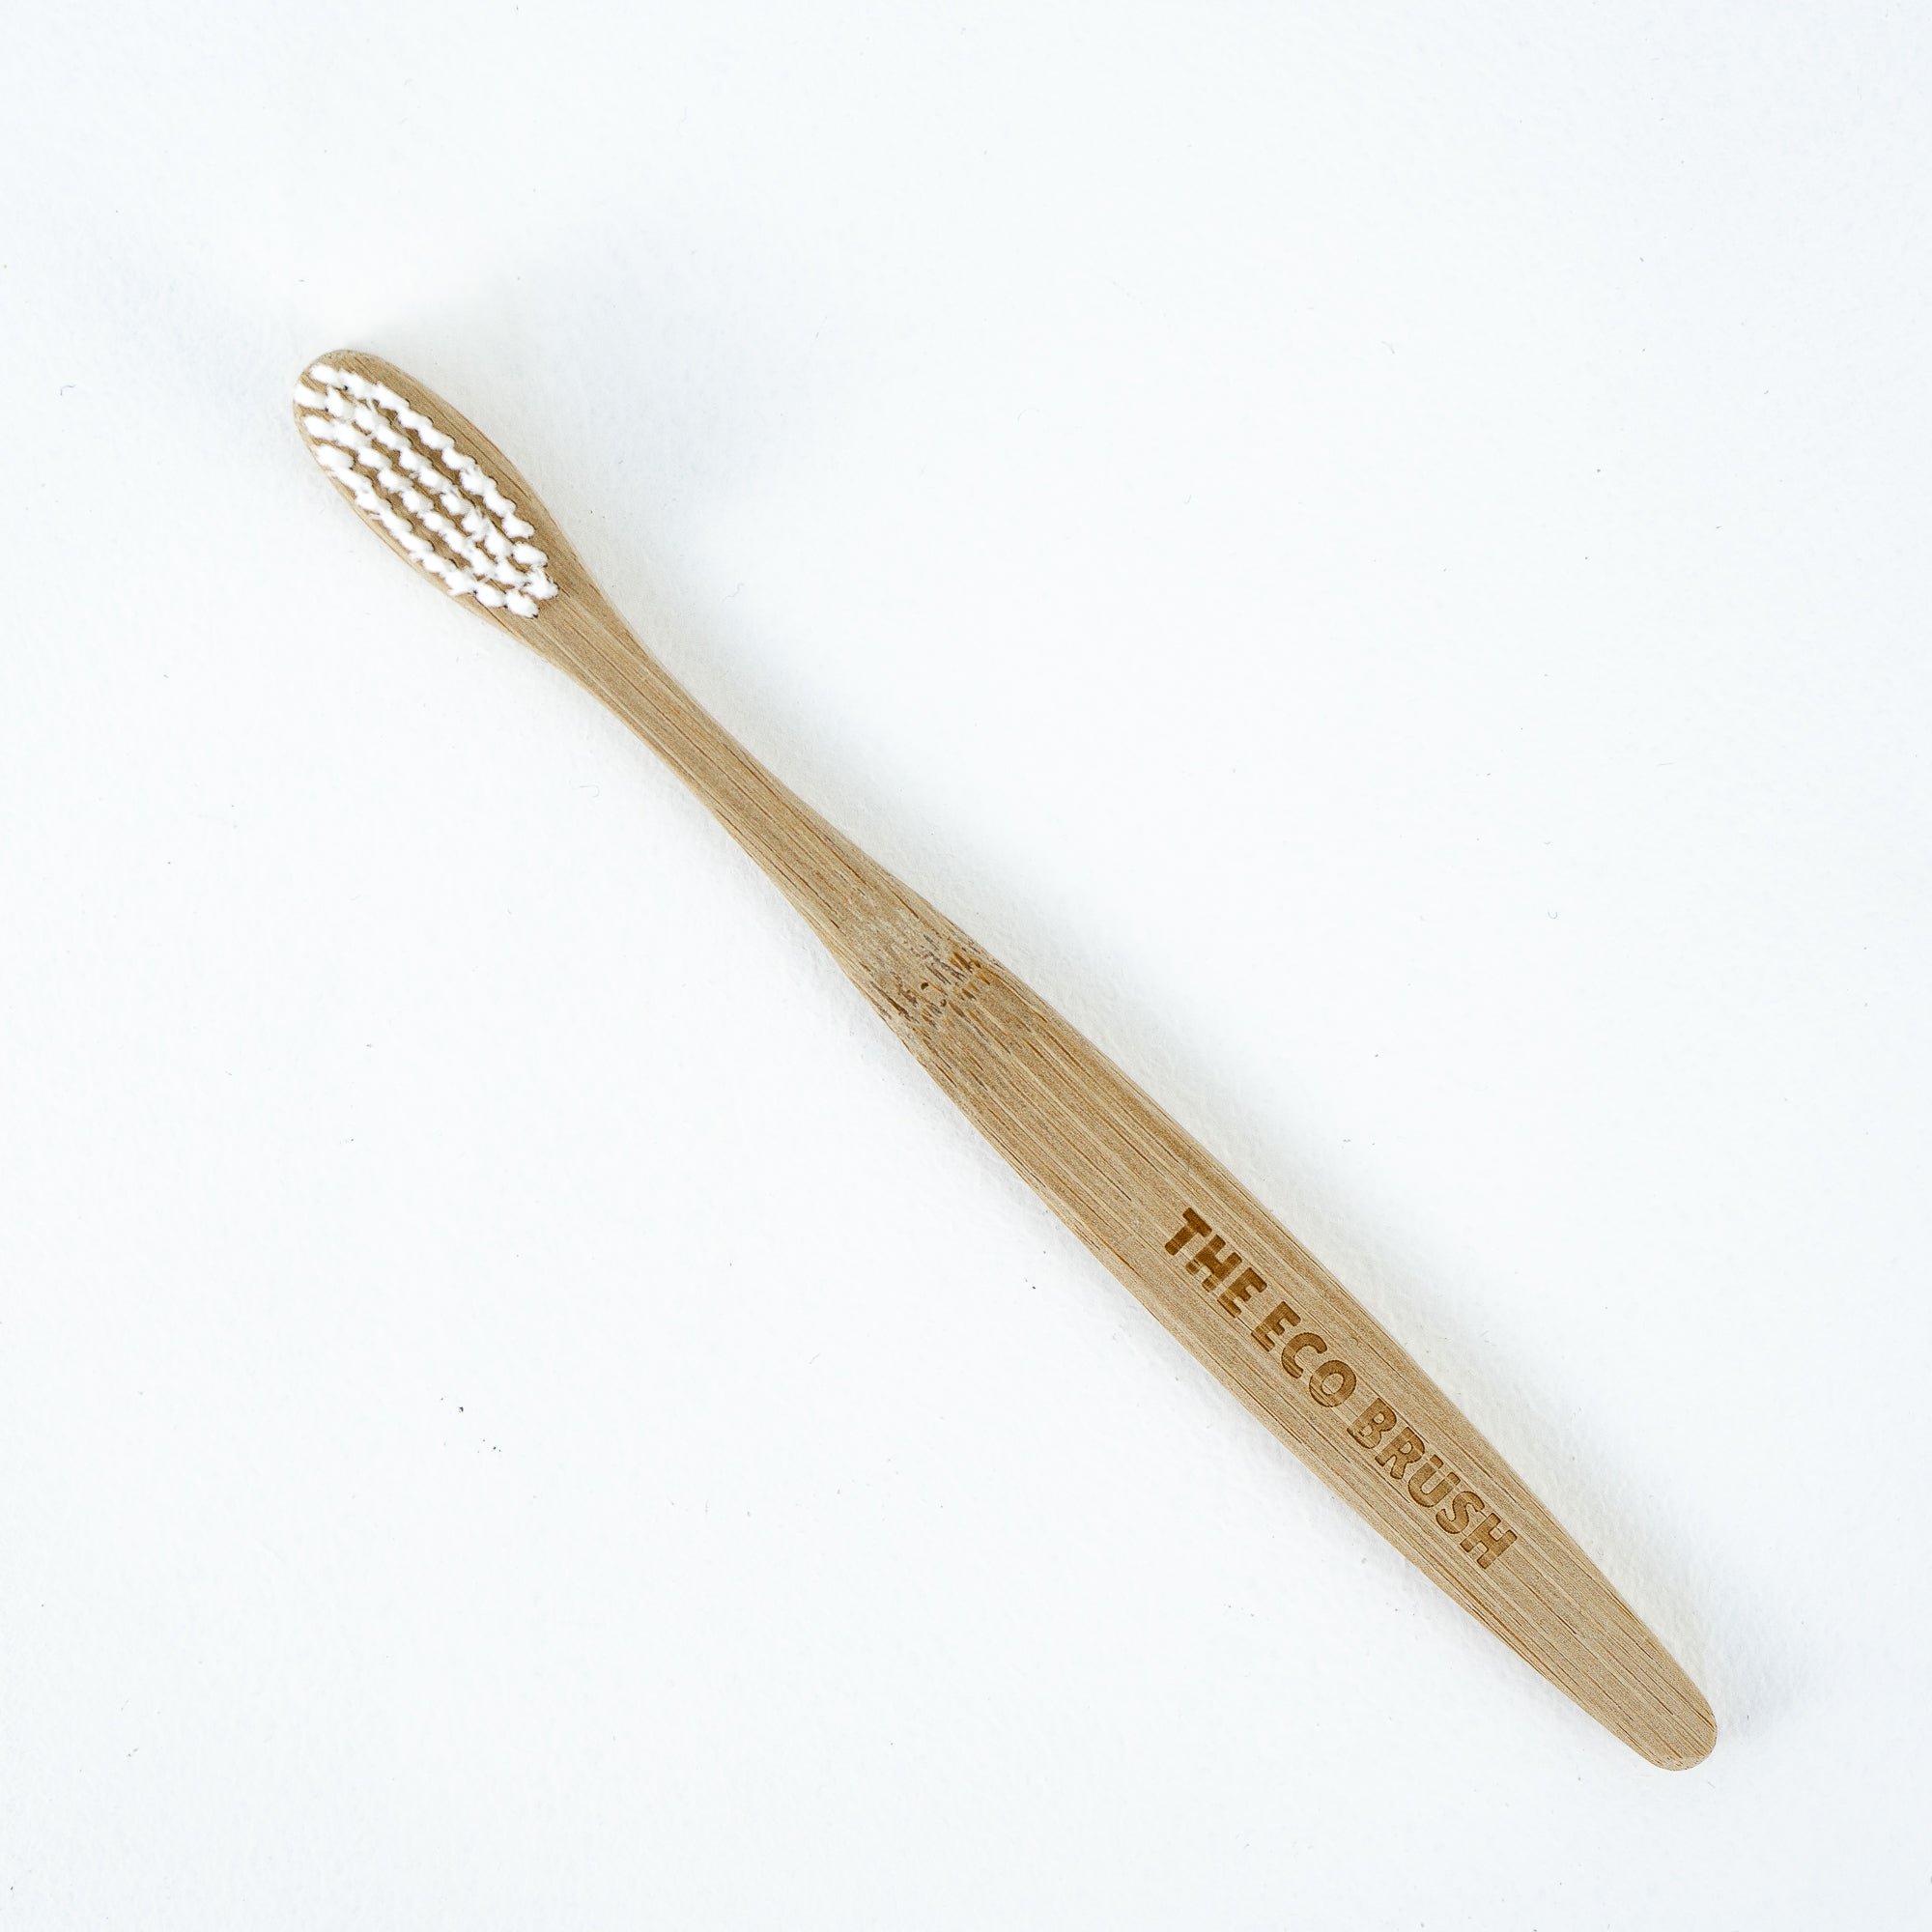 The Eco Brush Bamboo Toothbrush New Zealand NZ Zero Waste Plastic Free Store